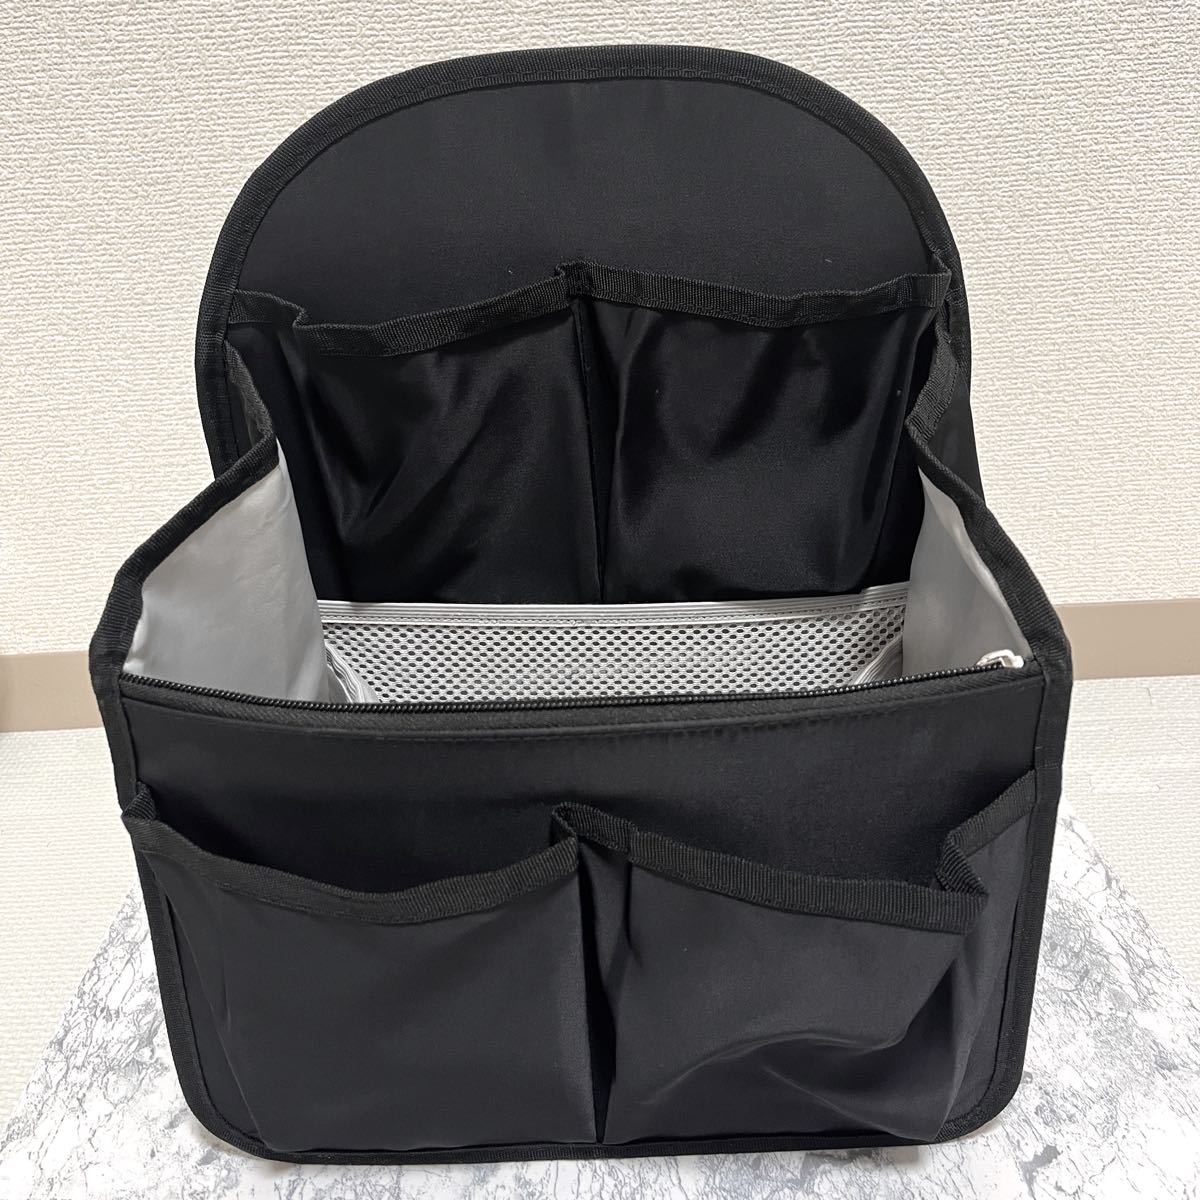 【美品】バッグインバッグ リュック タテ型 A4 ナイロン ブラック